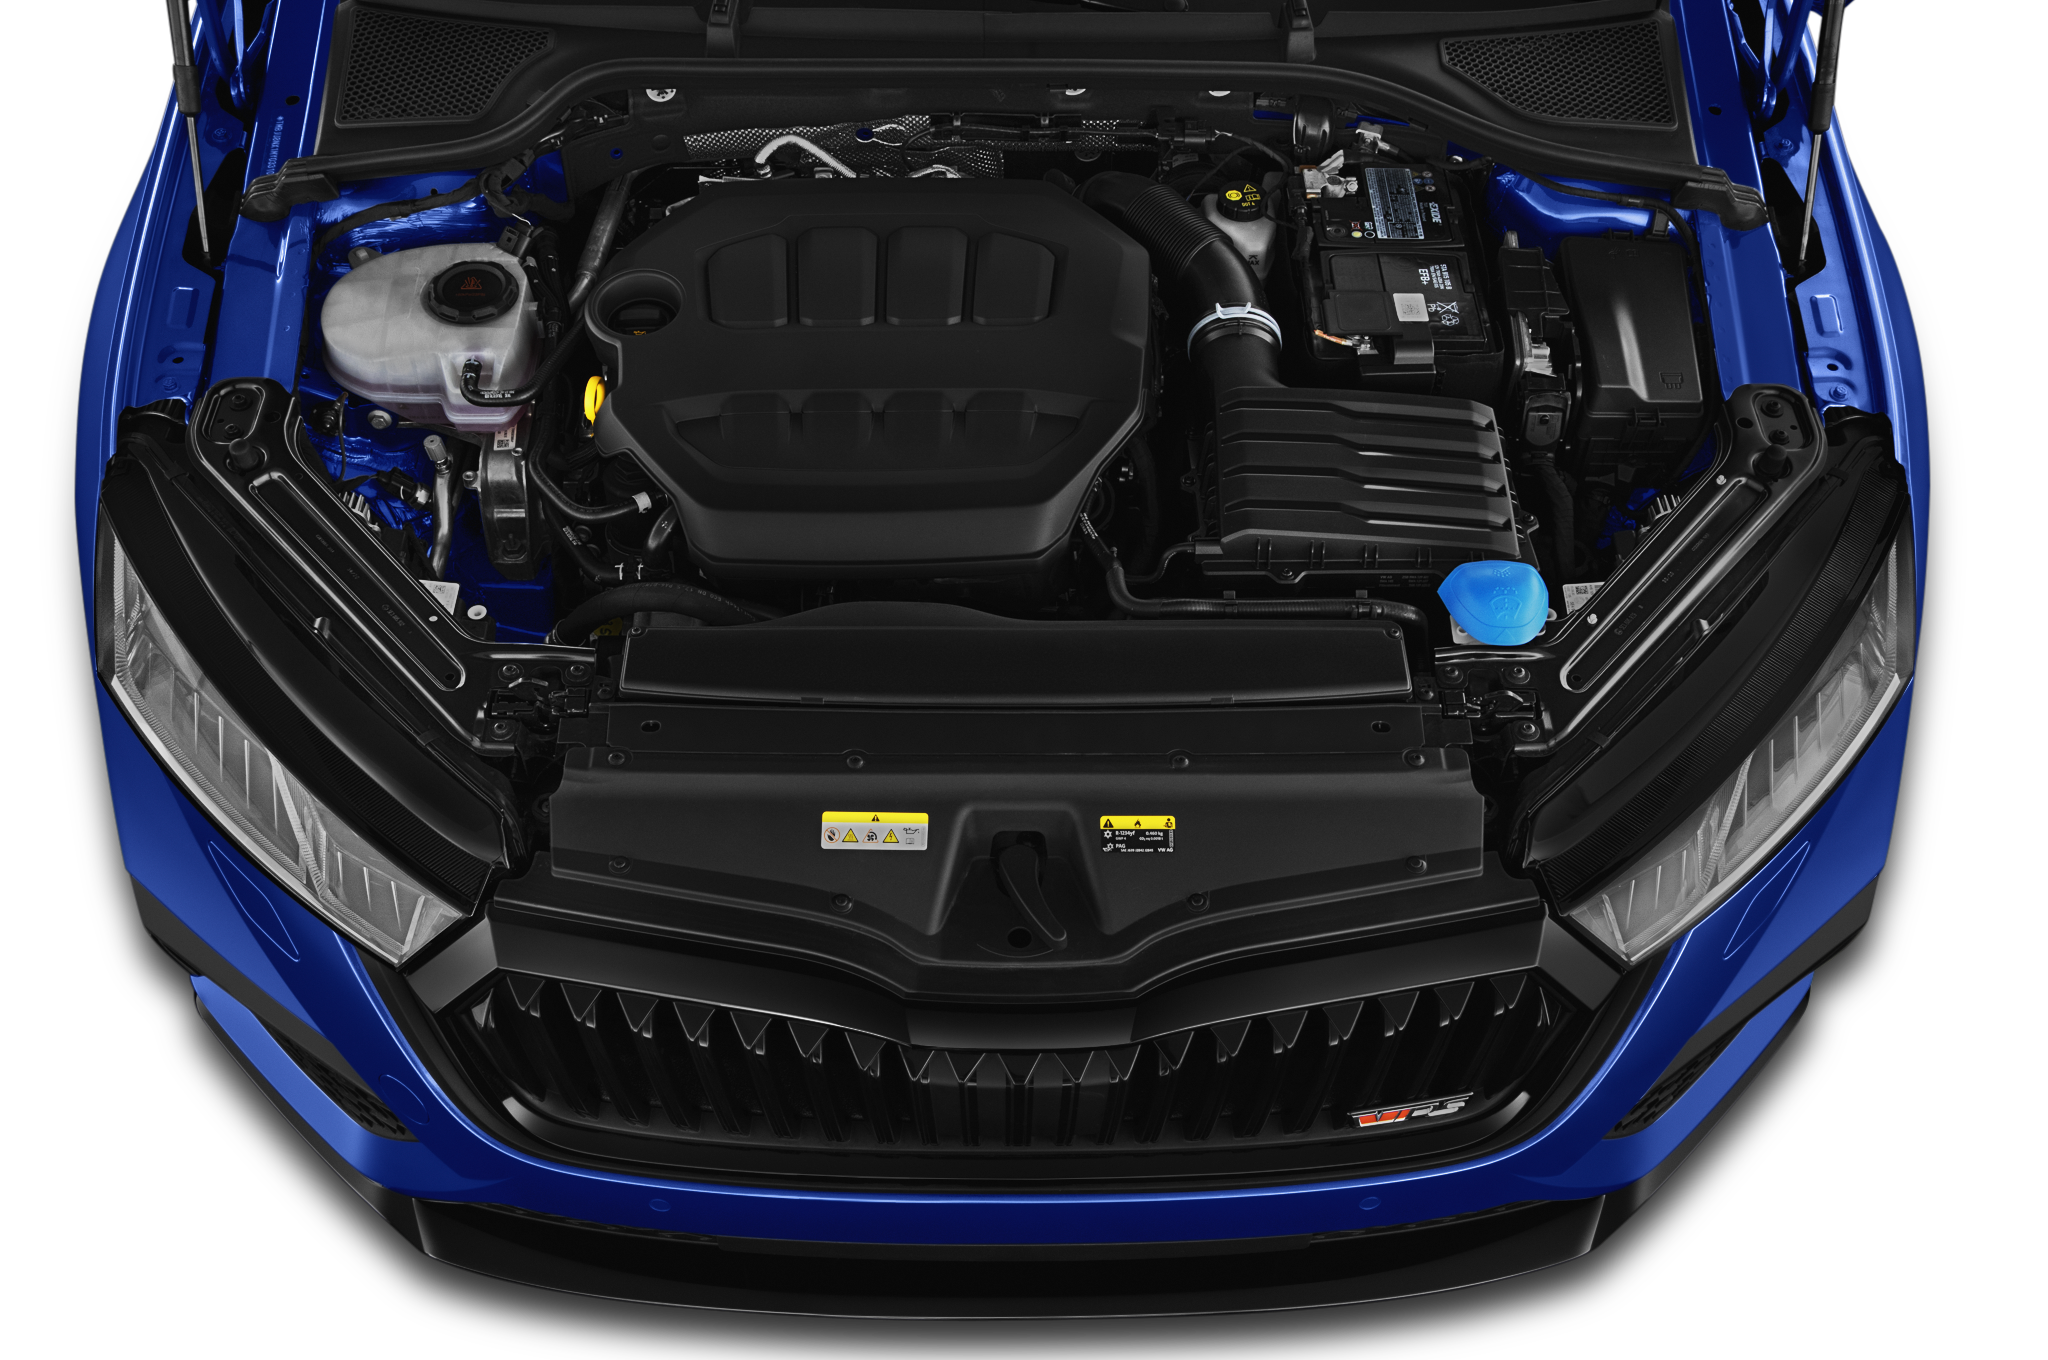 Skoda Octavia Combi (Baujahr 2020) RS 5 Türen Motor